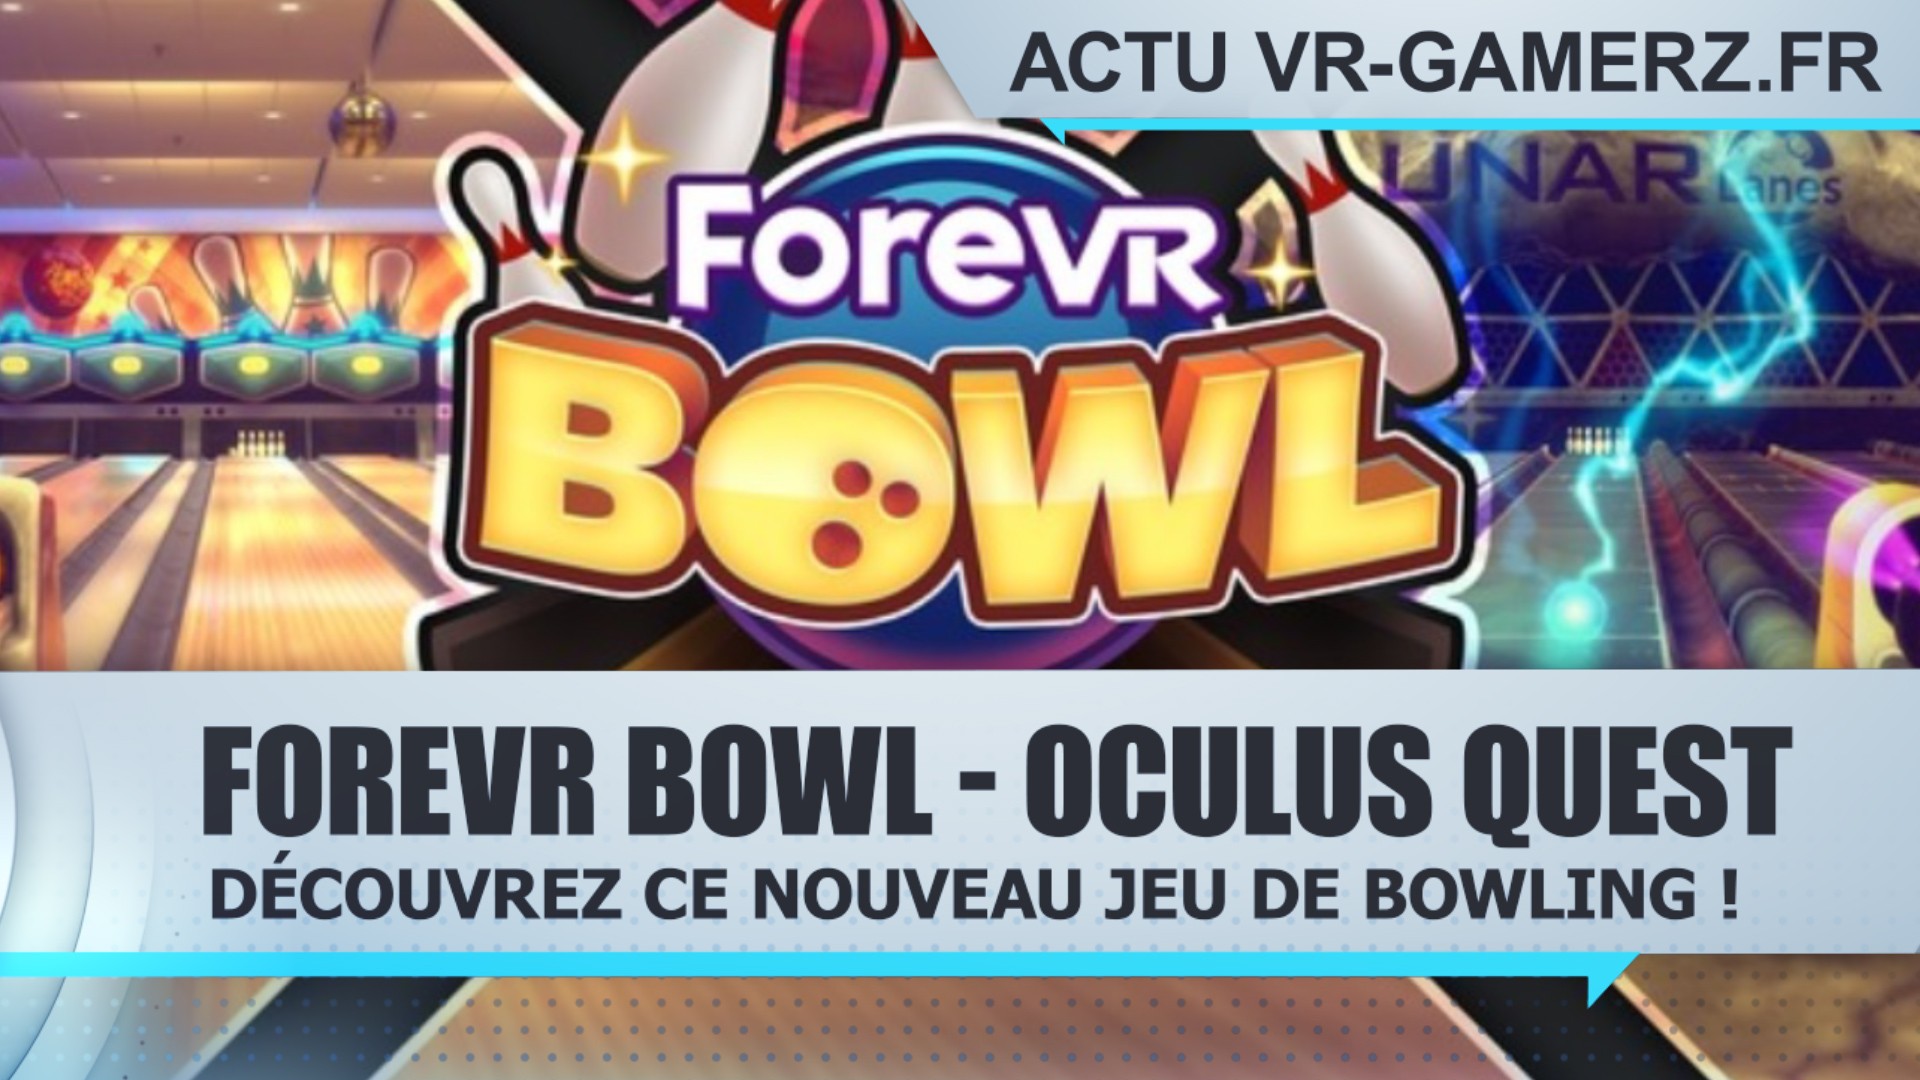 ForeVR Bowl : Le nouveau jeu de Bowling de l’Oculus quest !